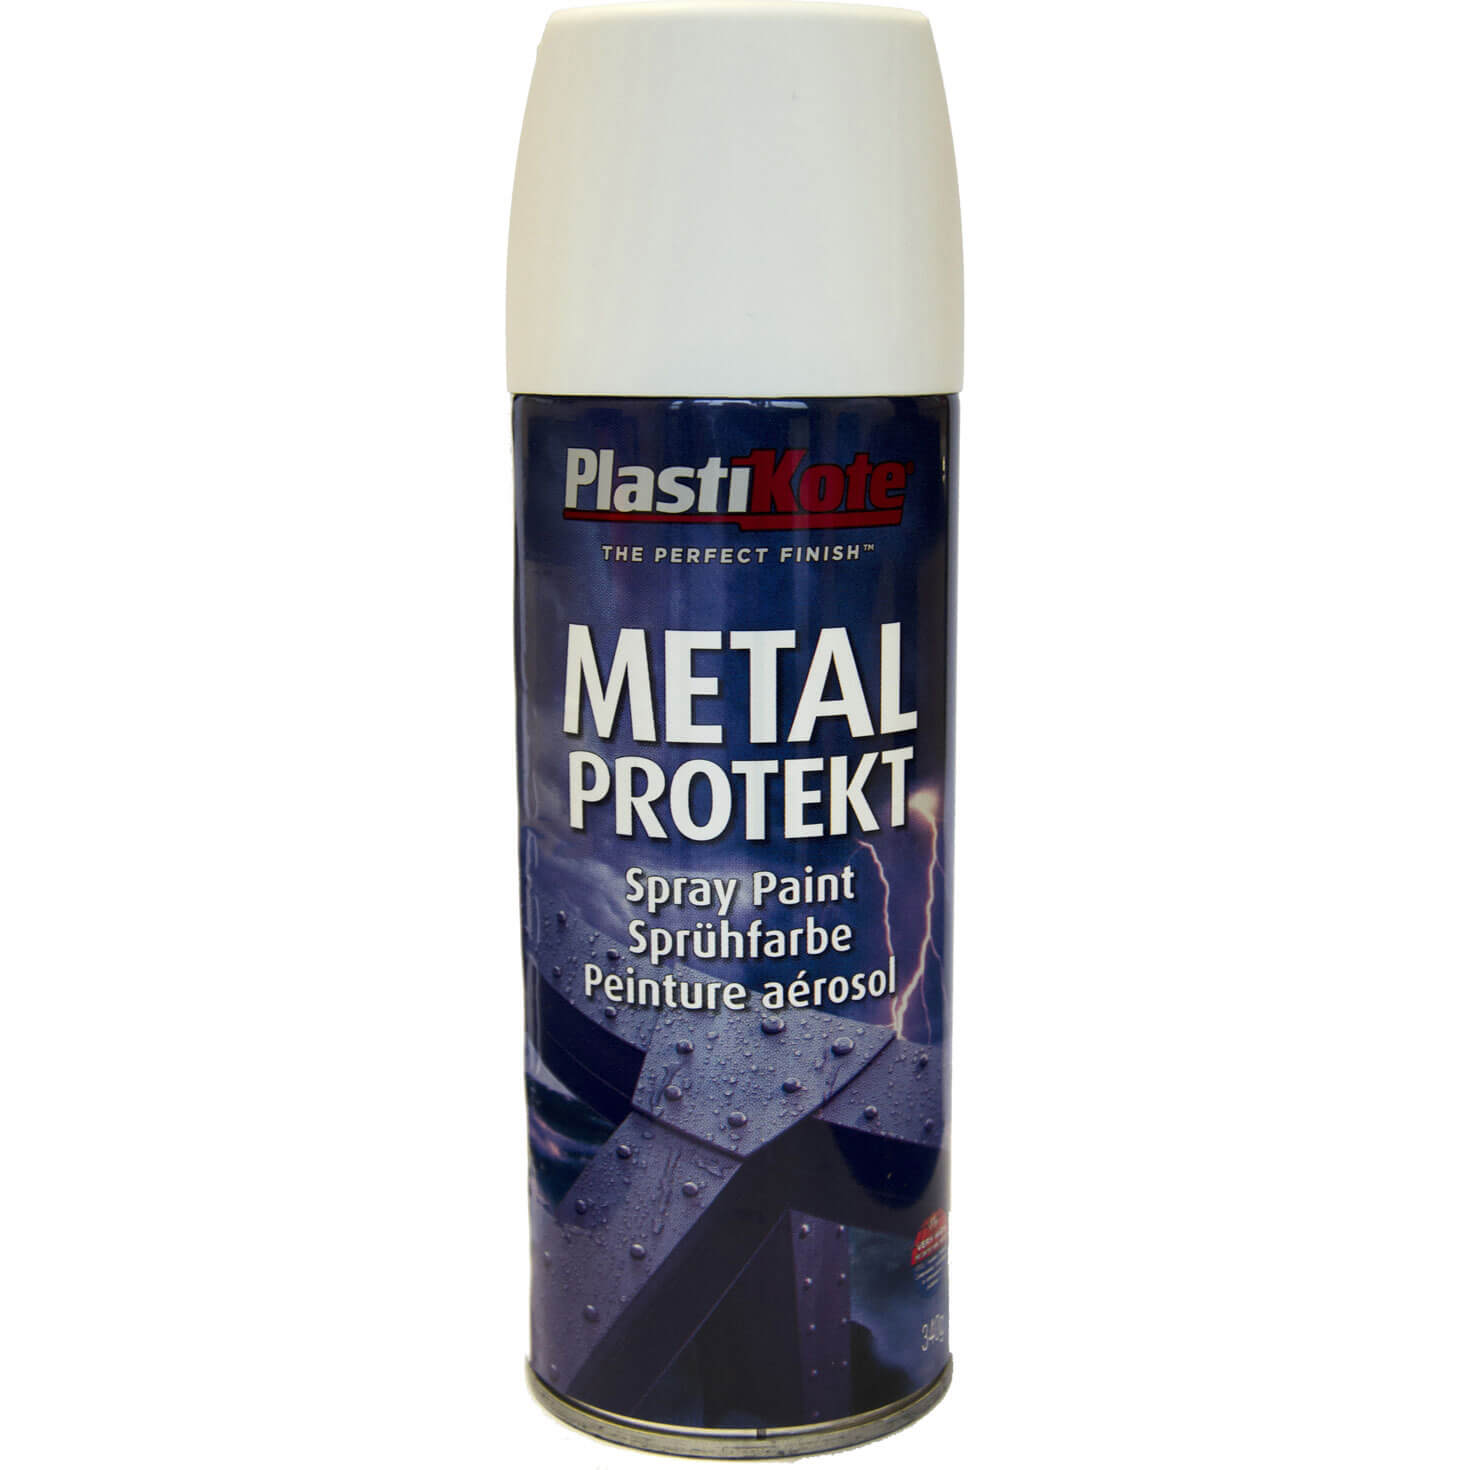 Image of Plastikote Metal Protekt Aerosol Spray Paint Satin White 400ml